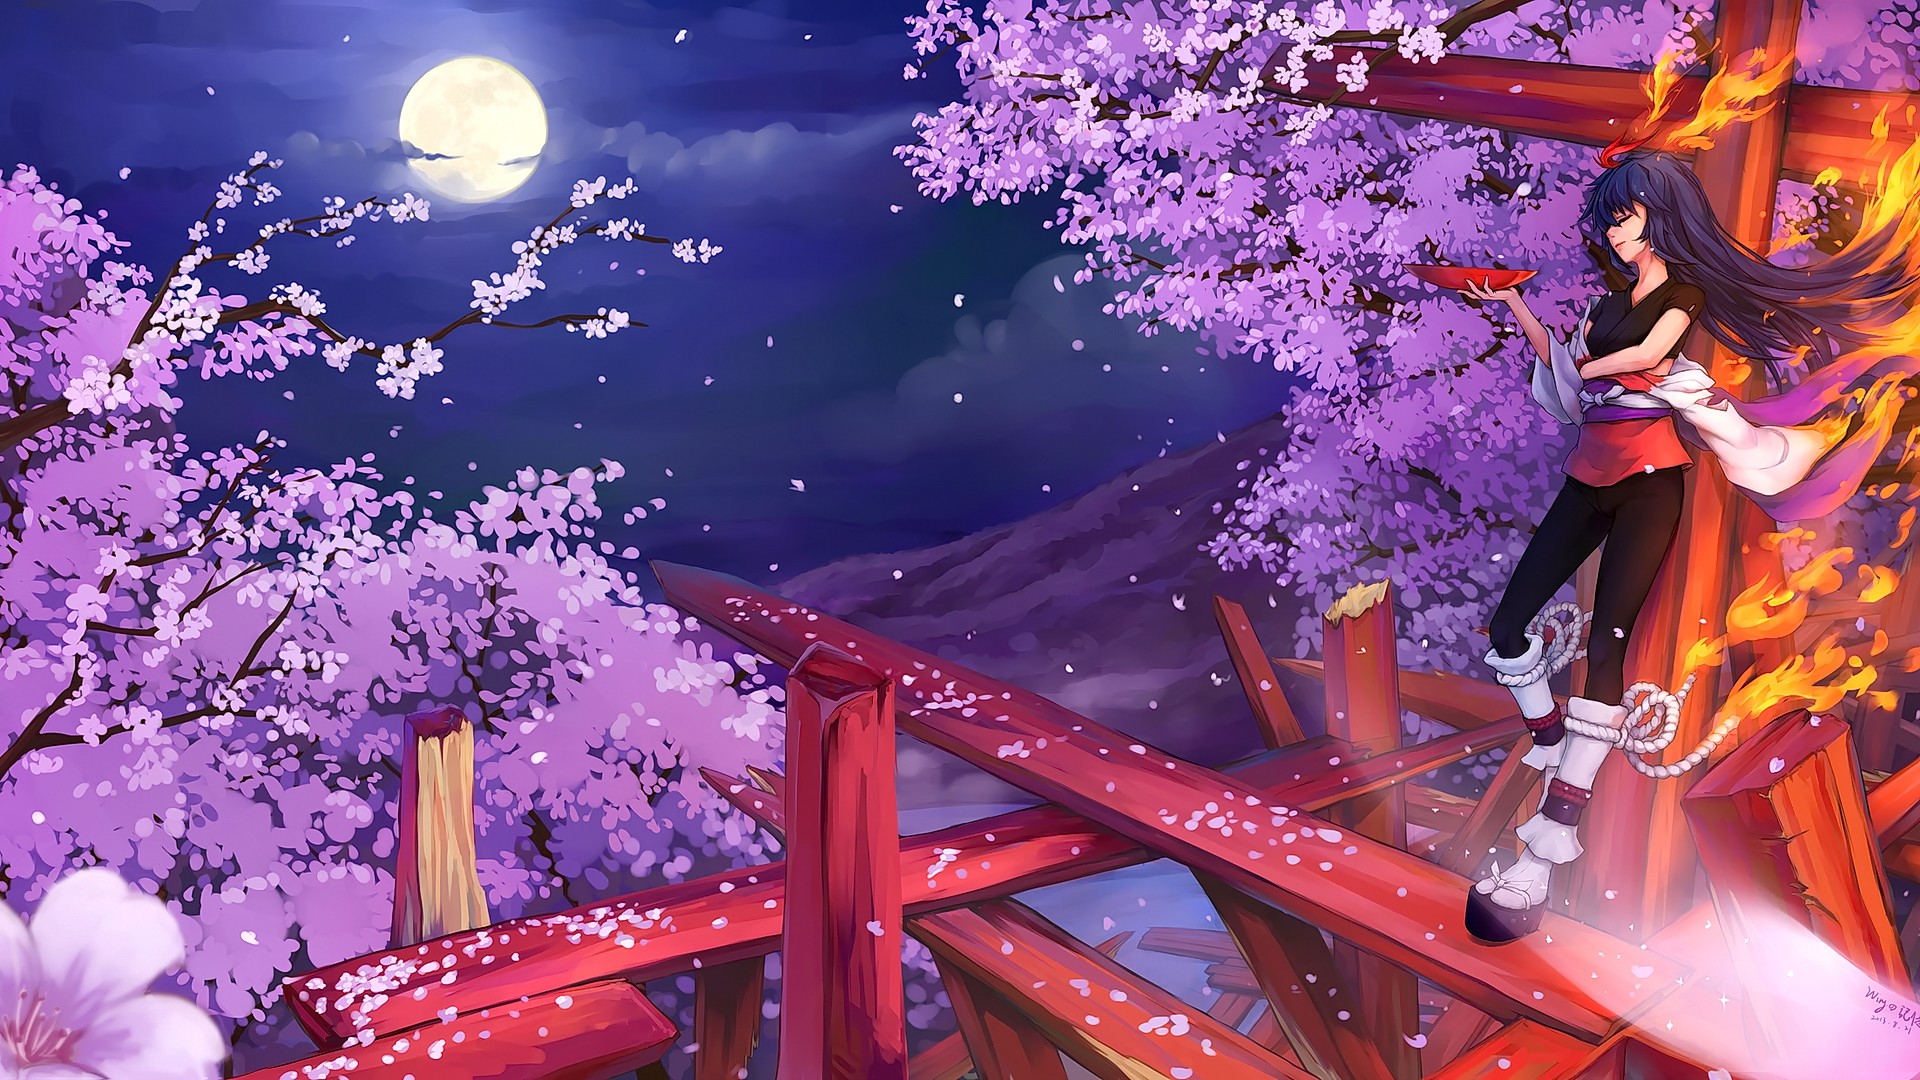 Anime 1920x1080 anime anime girls brunette long hair cherry blossom night Moon looking away smiling fantasy art fantasy girl trees